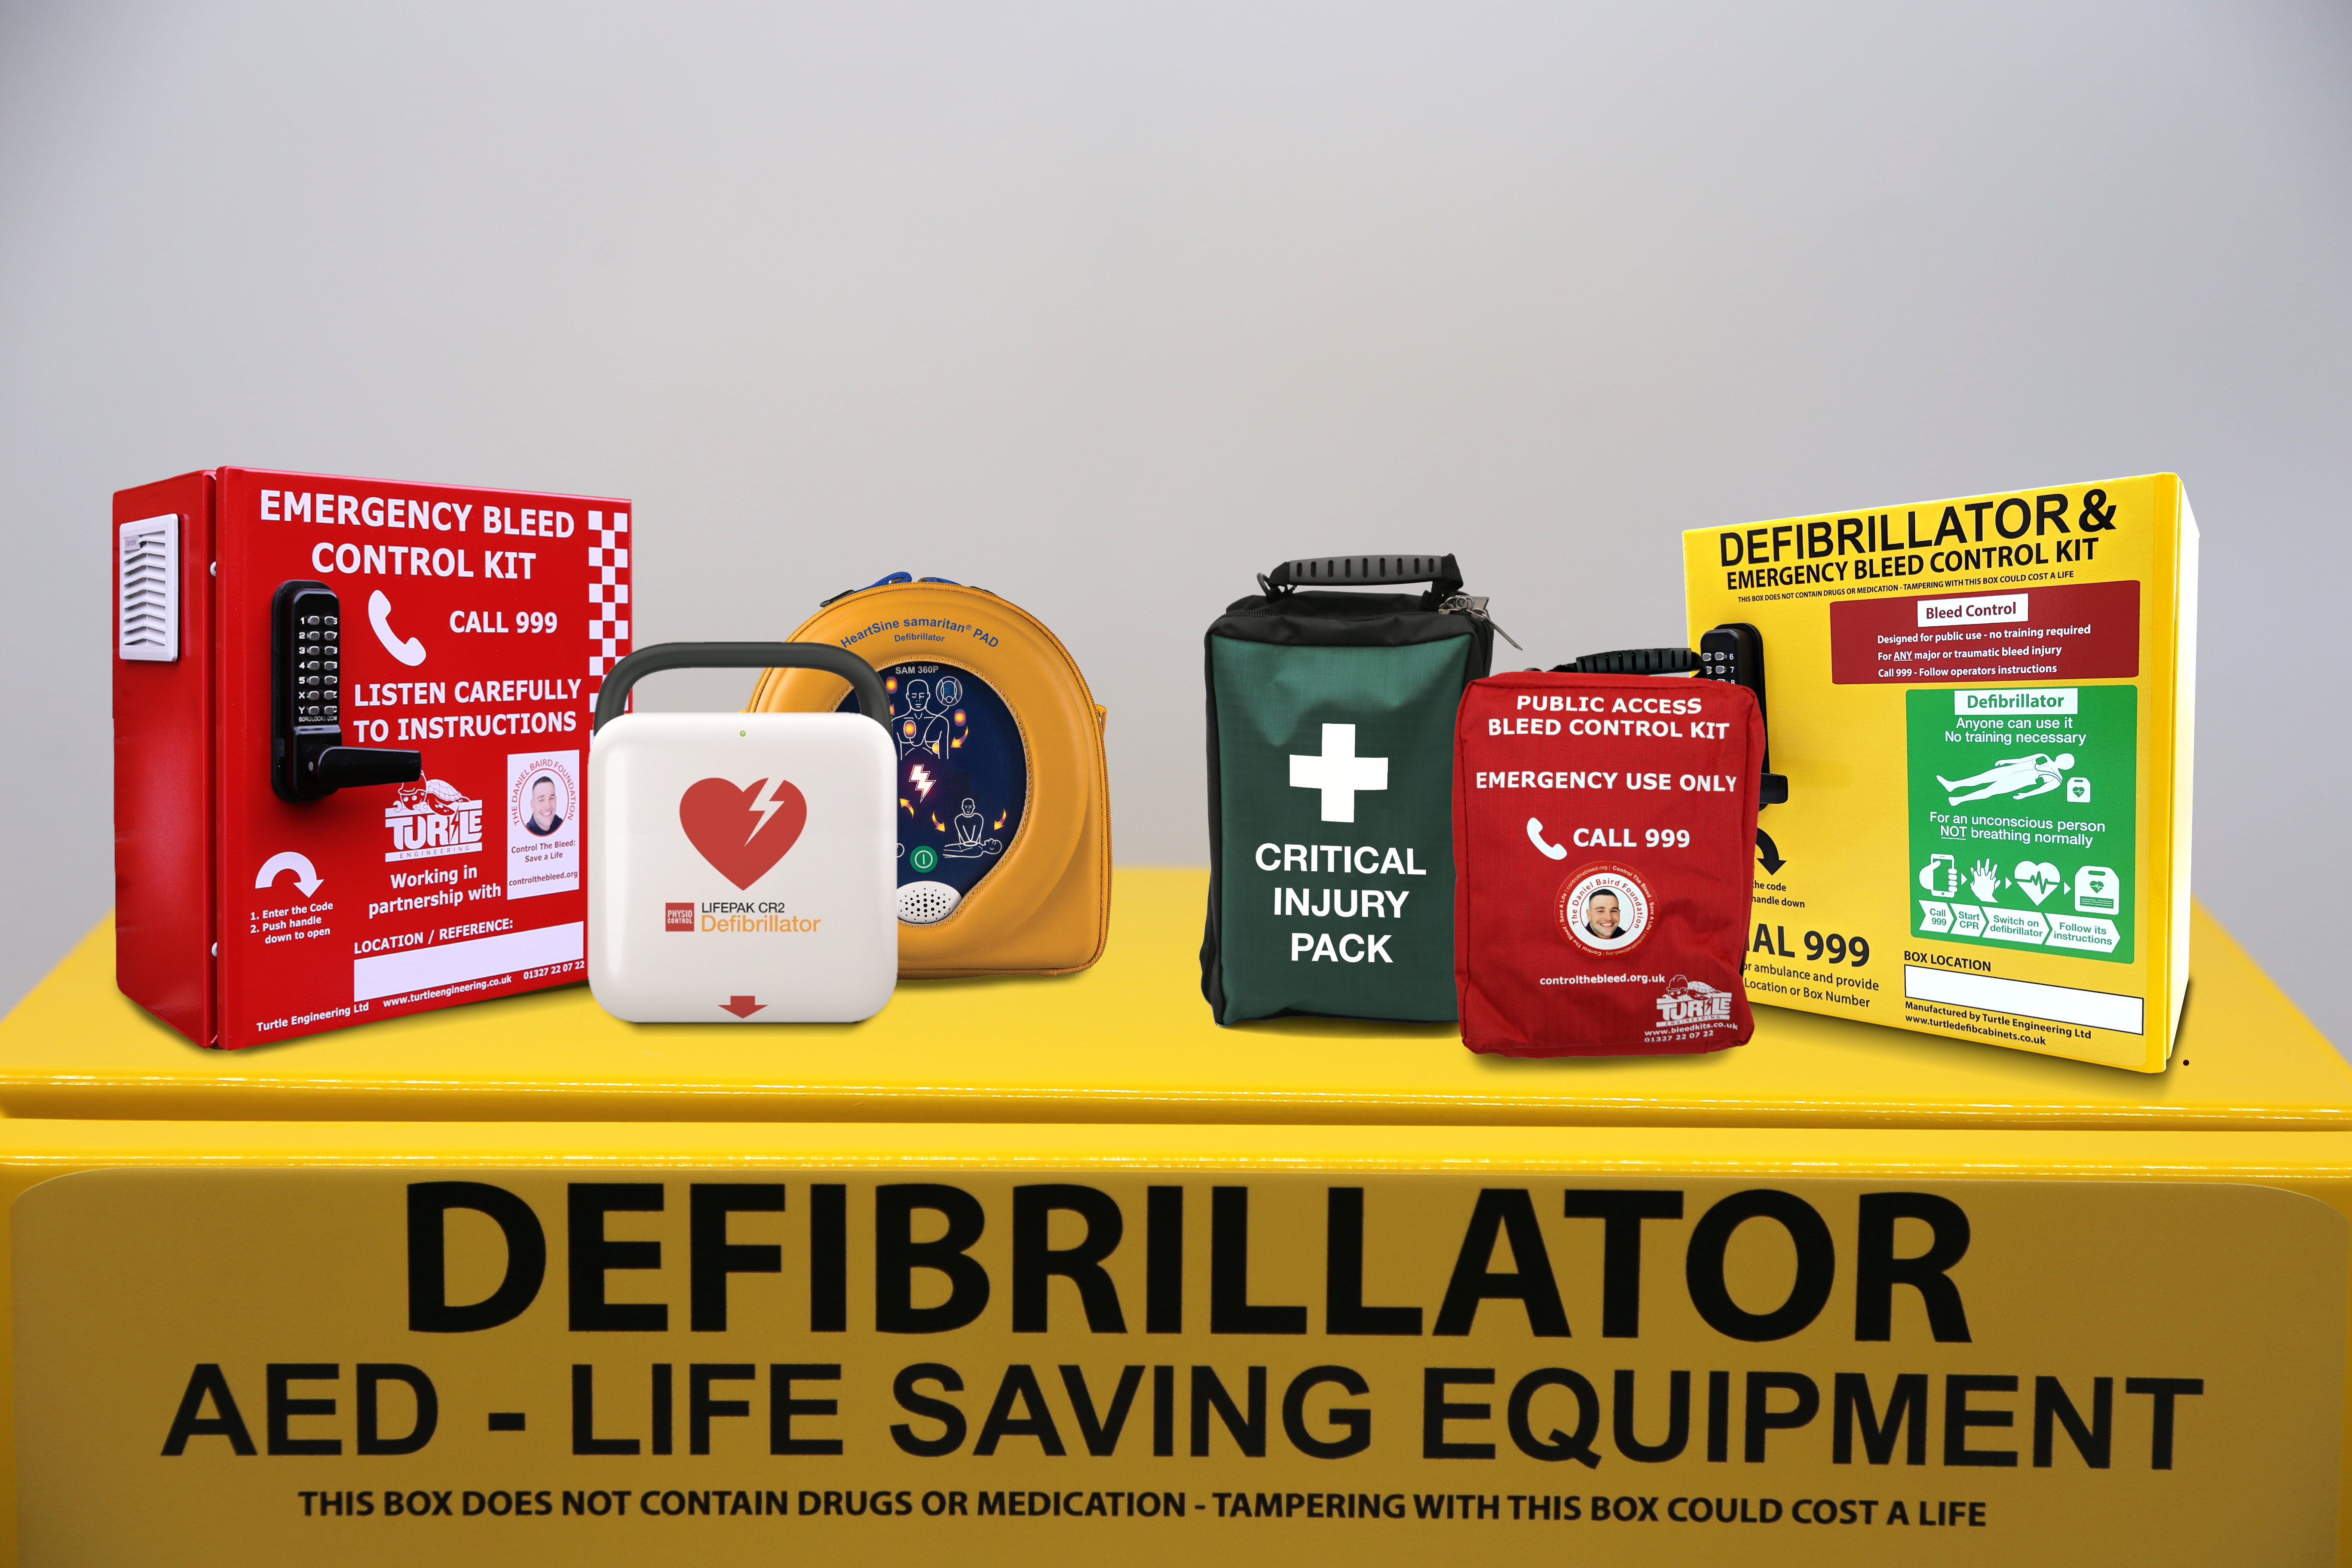 Best defibrillators